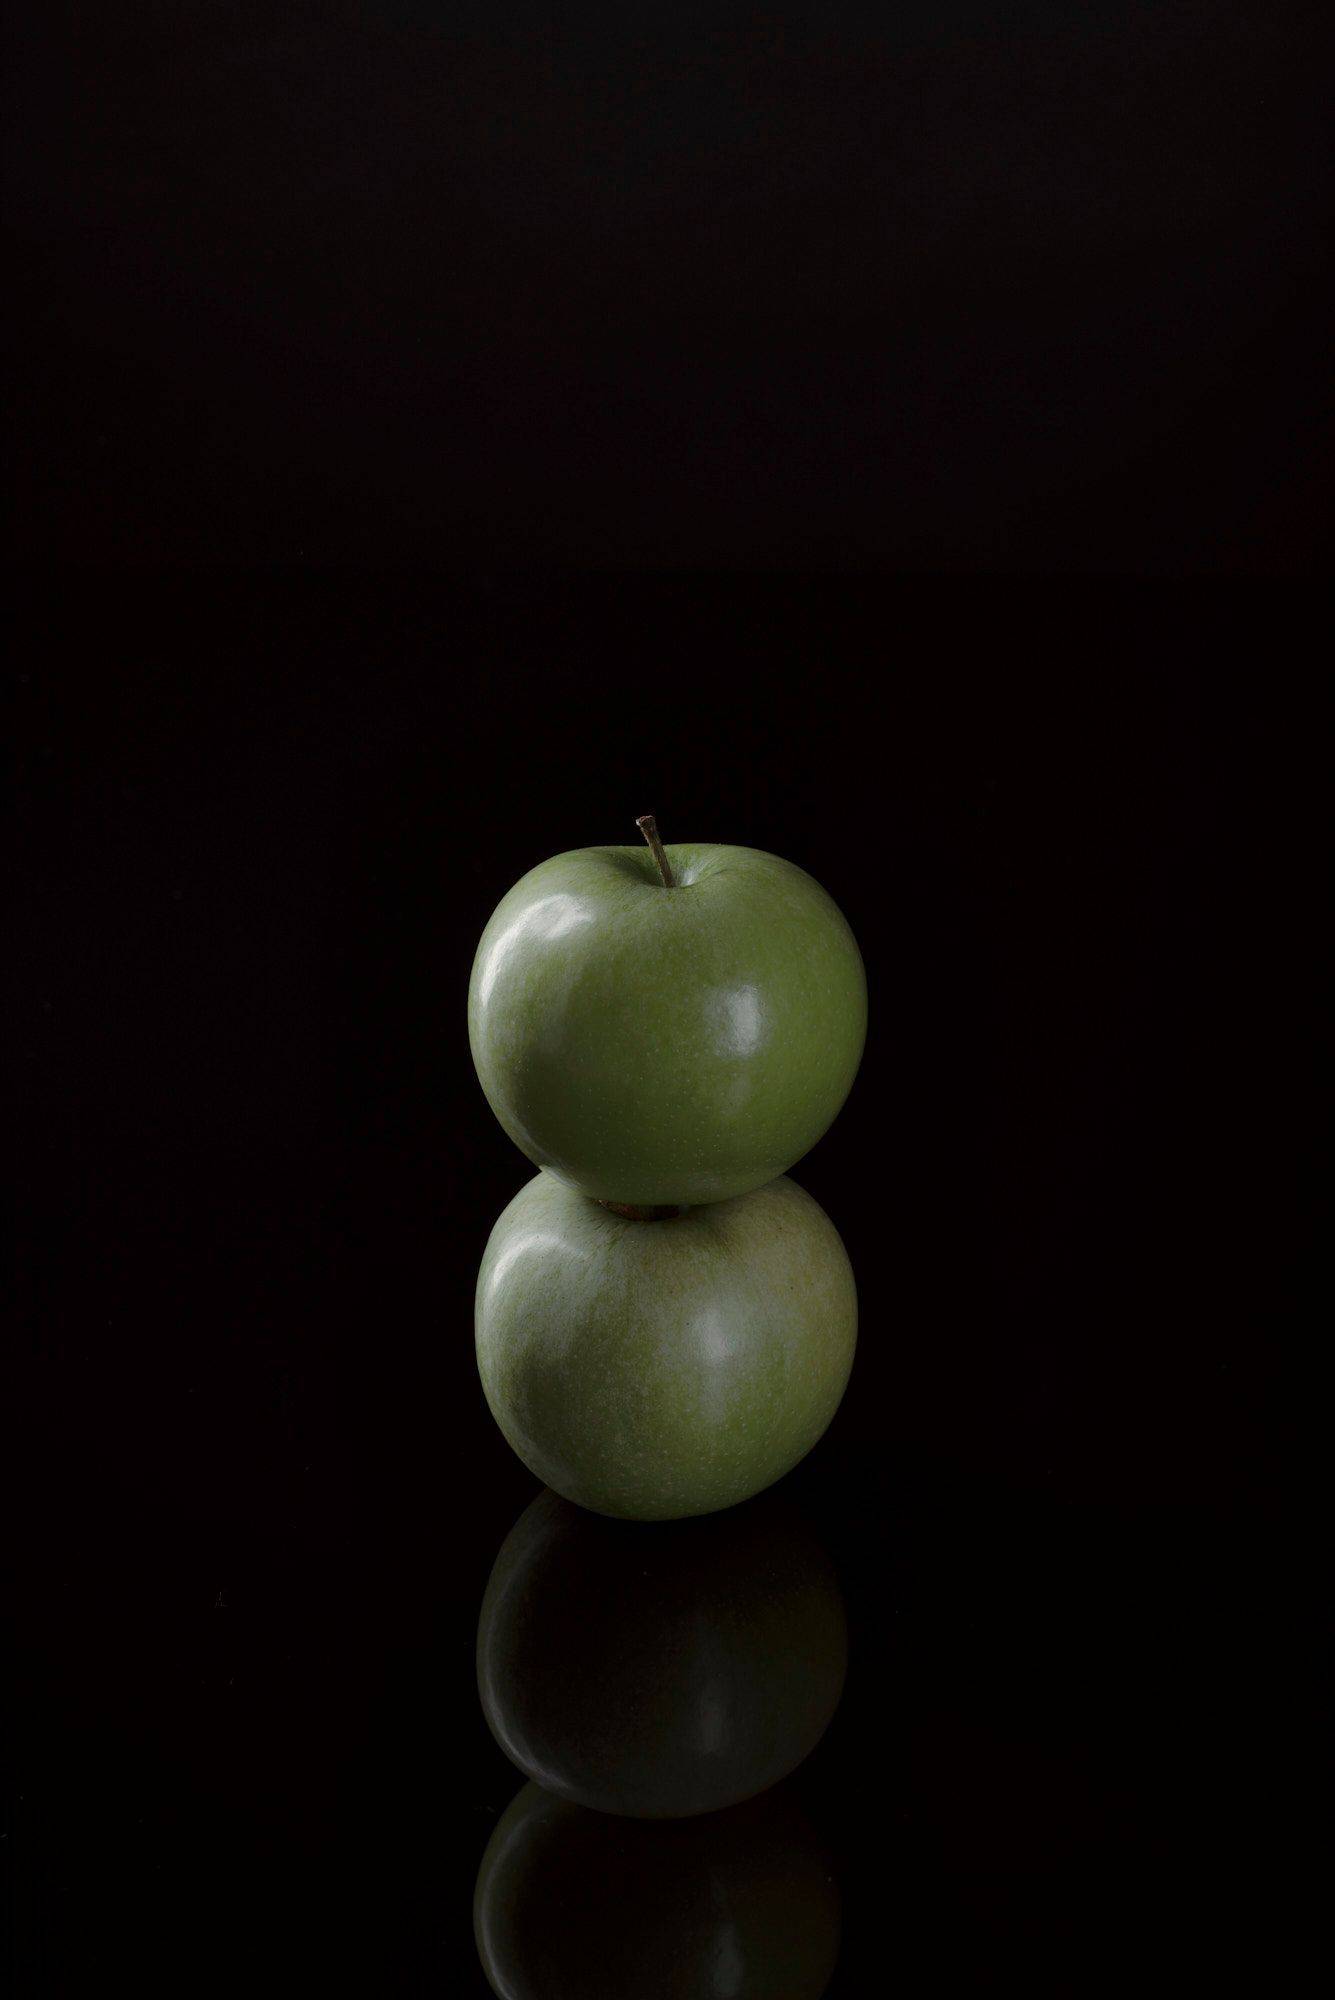 zwei grüne äpfel mit schwarzem hintergrund